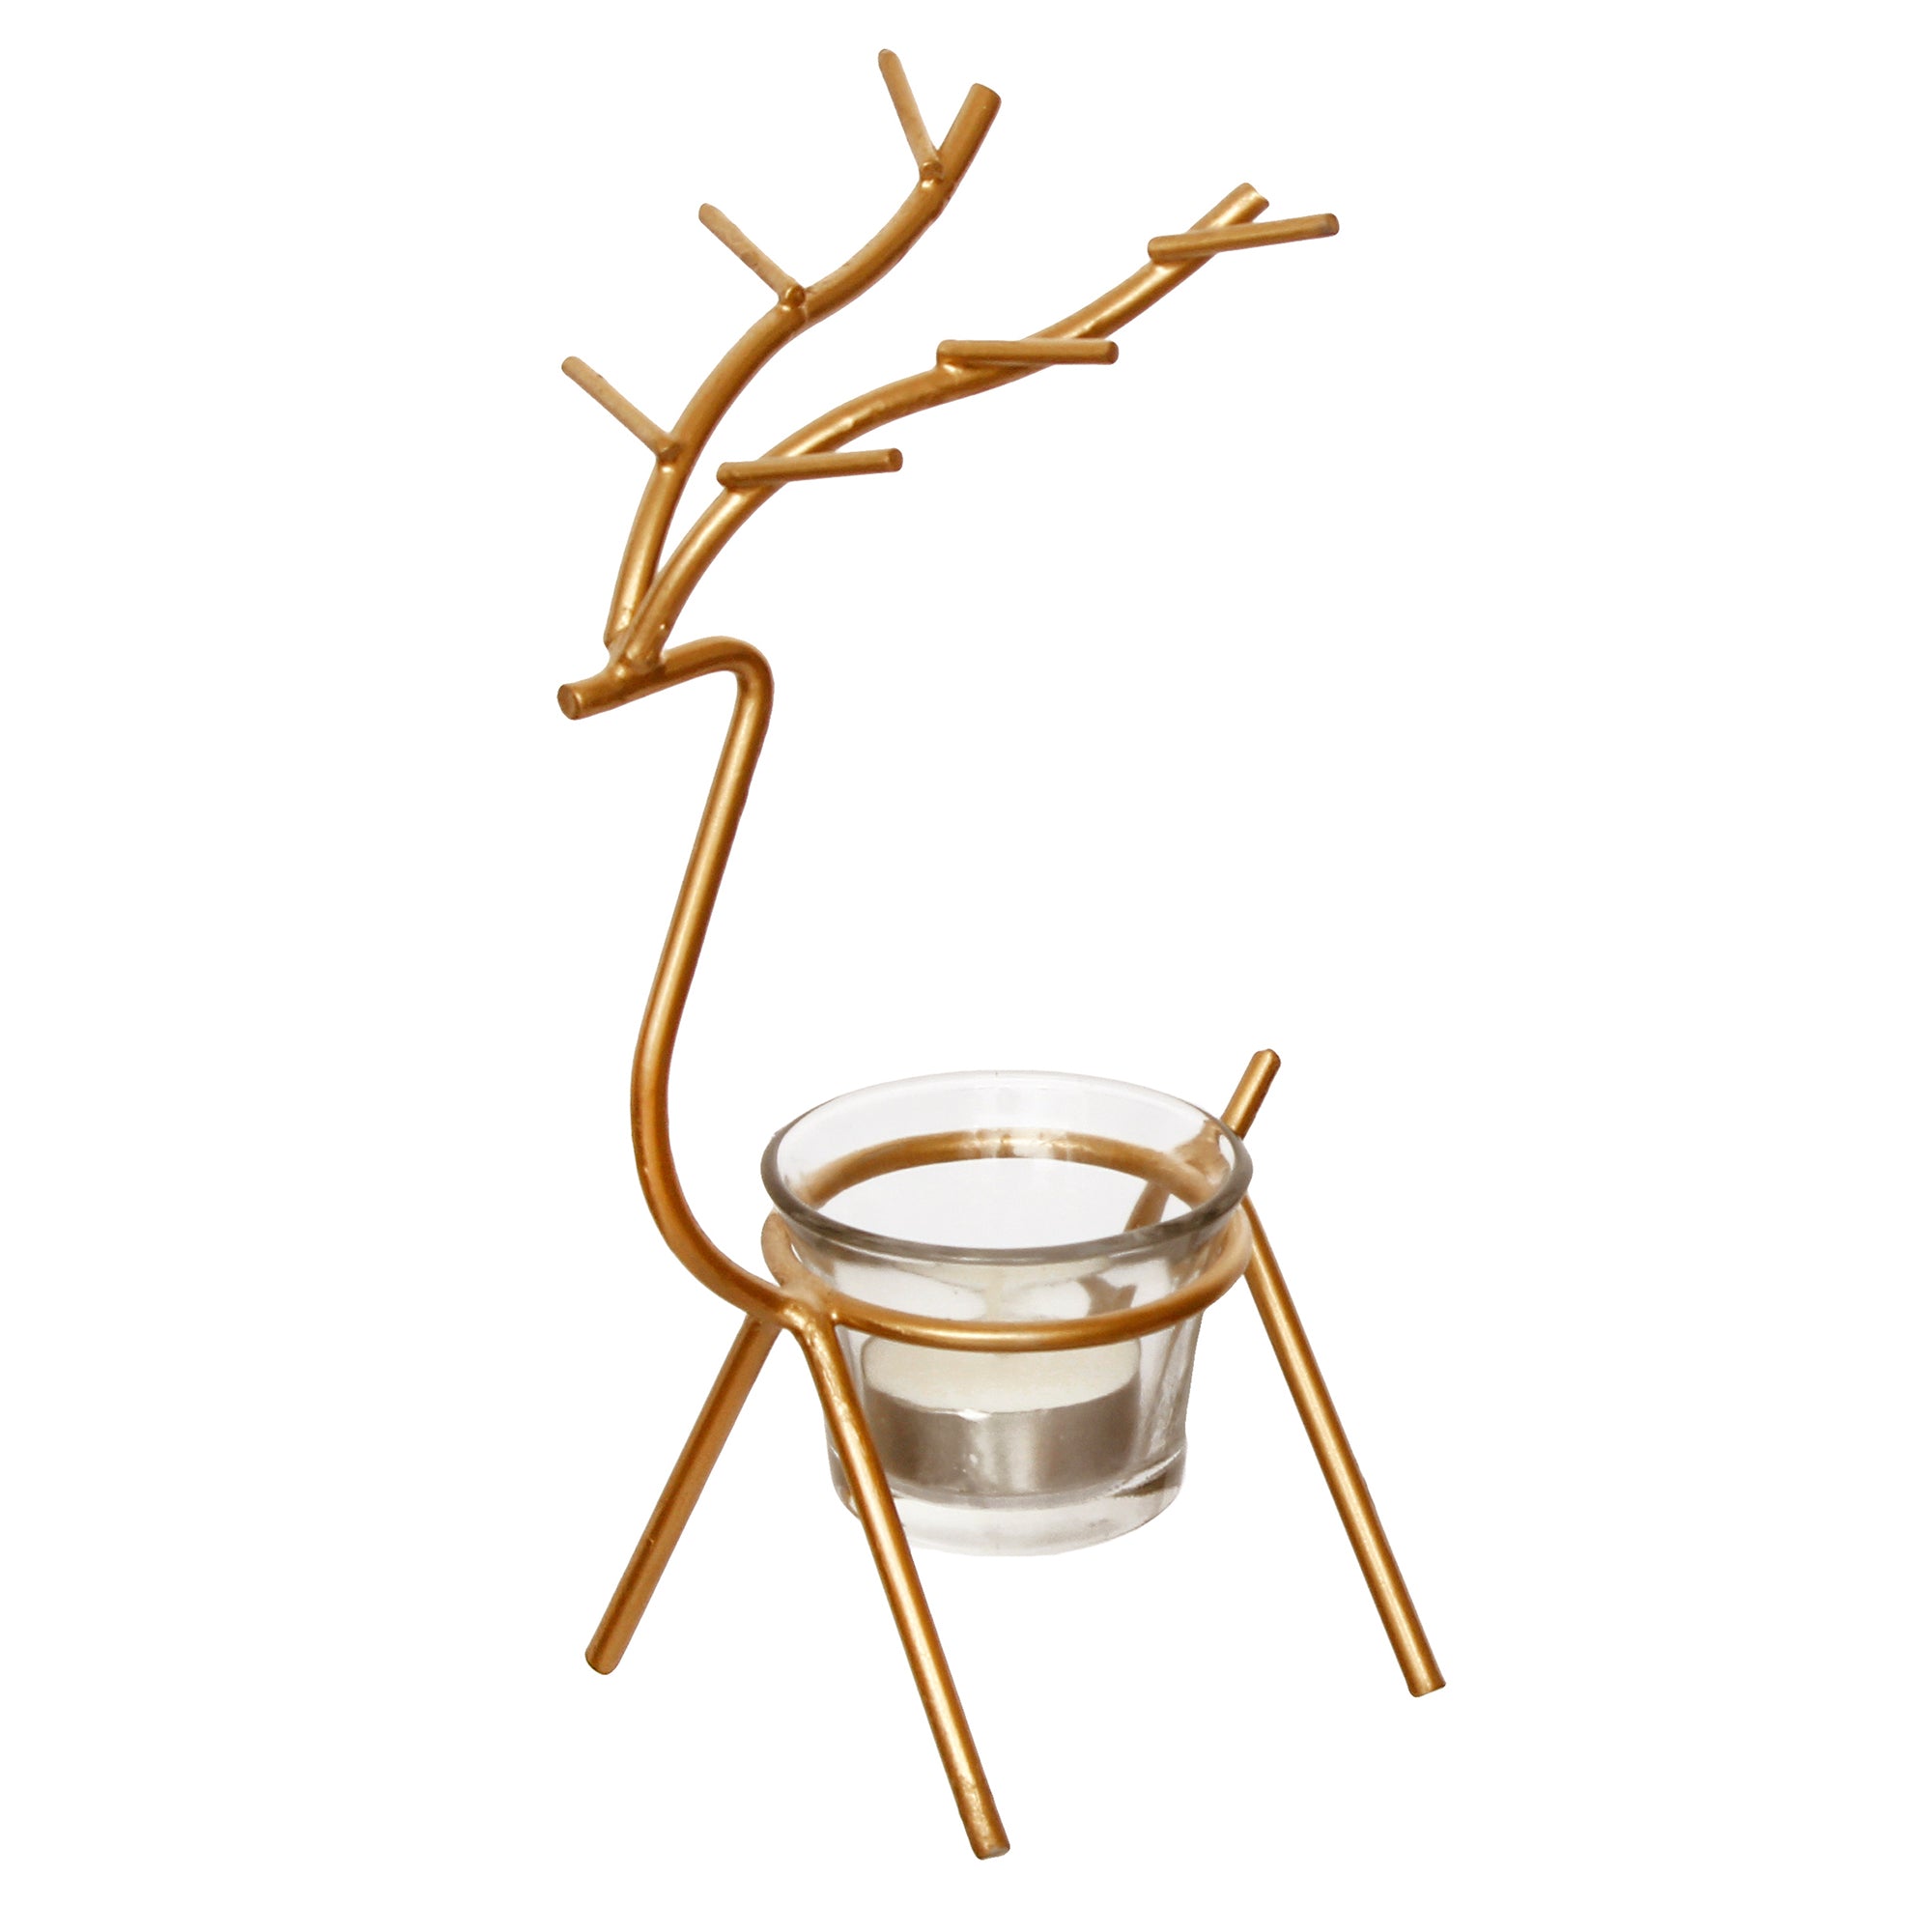 Deer Shape Decorative Handcrafted Metal Golden tea light candle holder 4